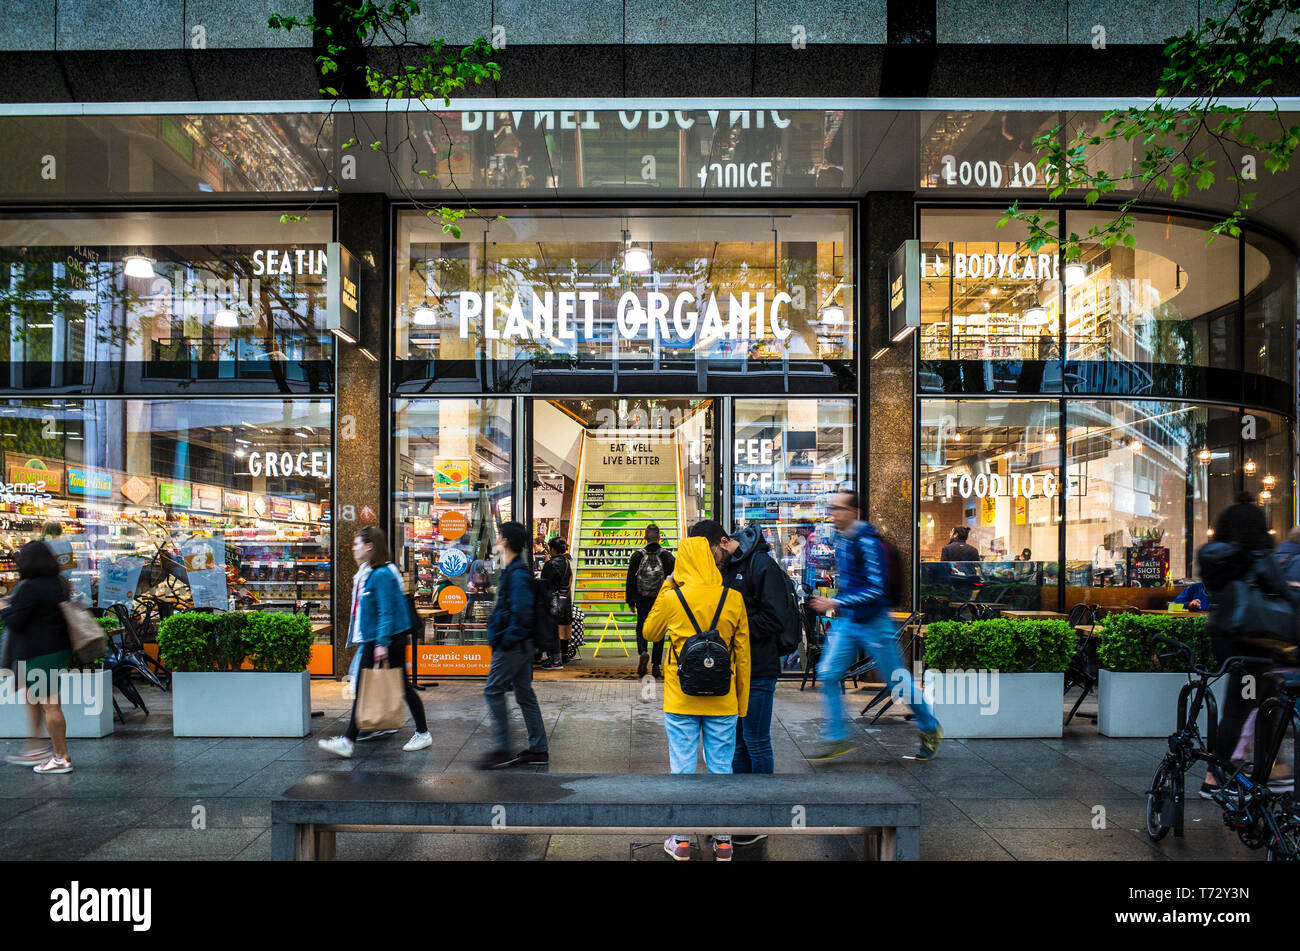 Planet Organic Store & Cafe Londra, il pianeta archivio organico in Tottenham Court Road nel centro di Londra. La catena è stata fondata nel Regno Unito nel 1995 Foto Stock